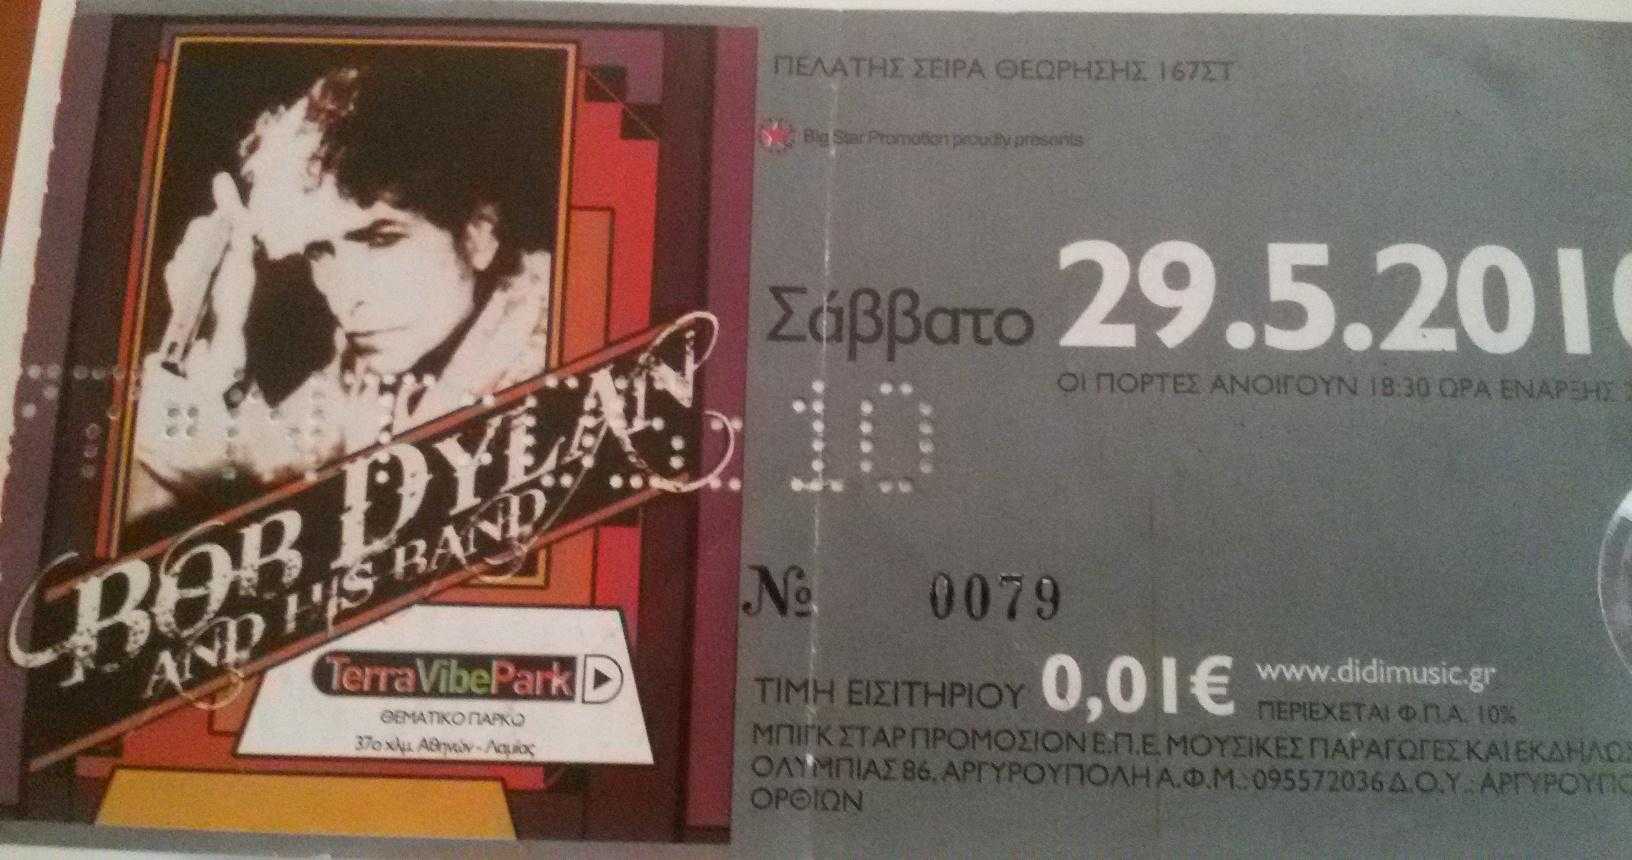 Bob Dylan ticket Athens 2010